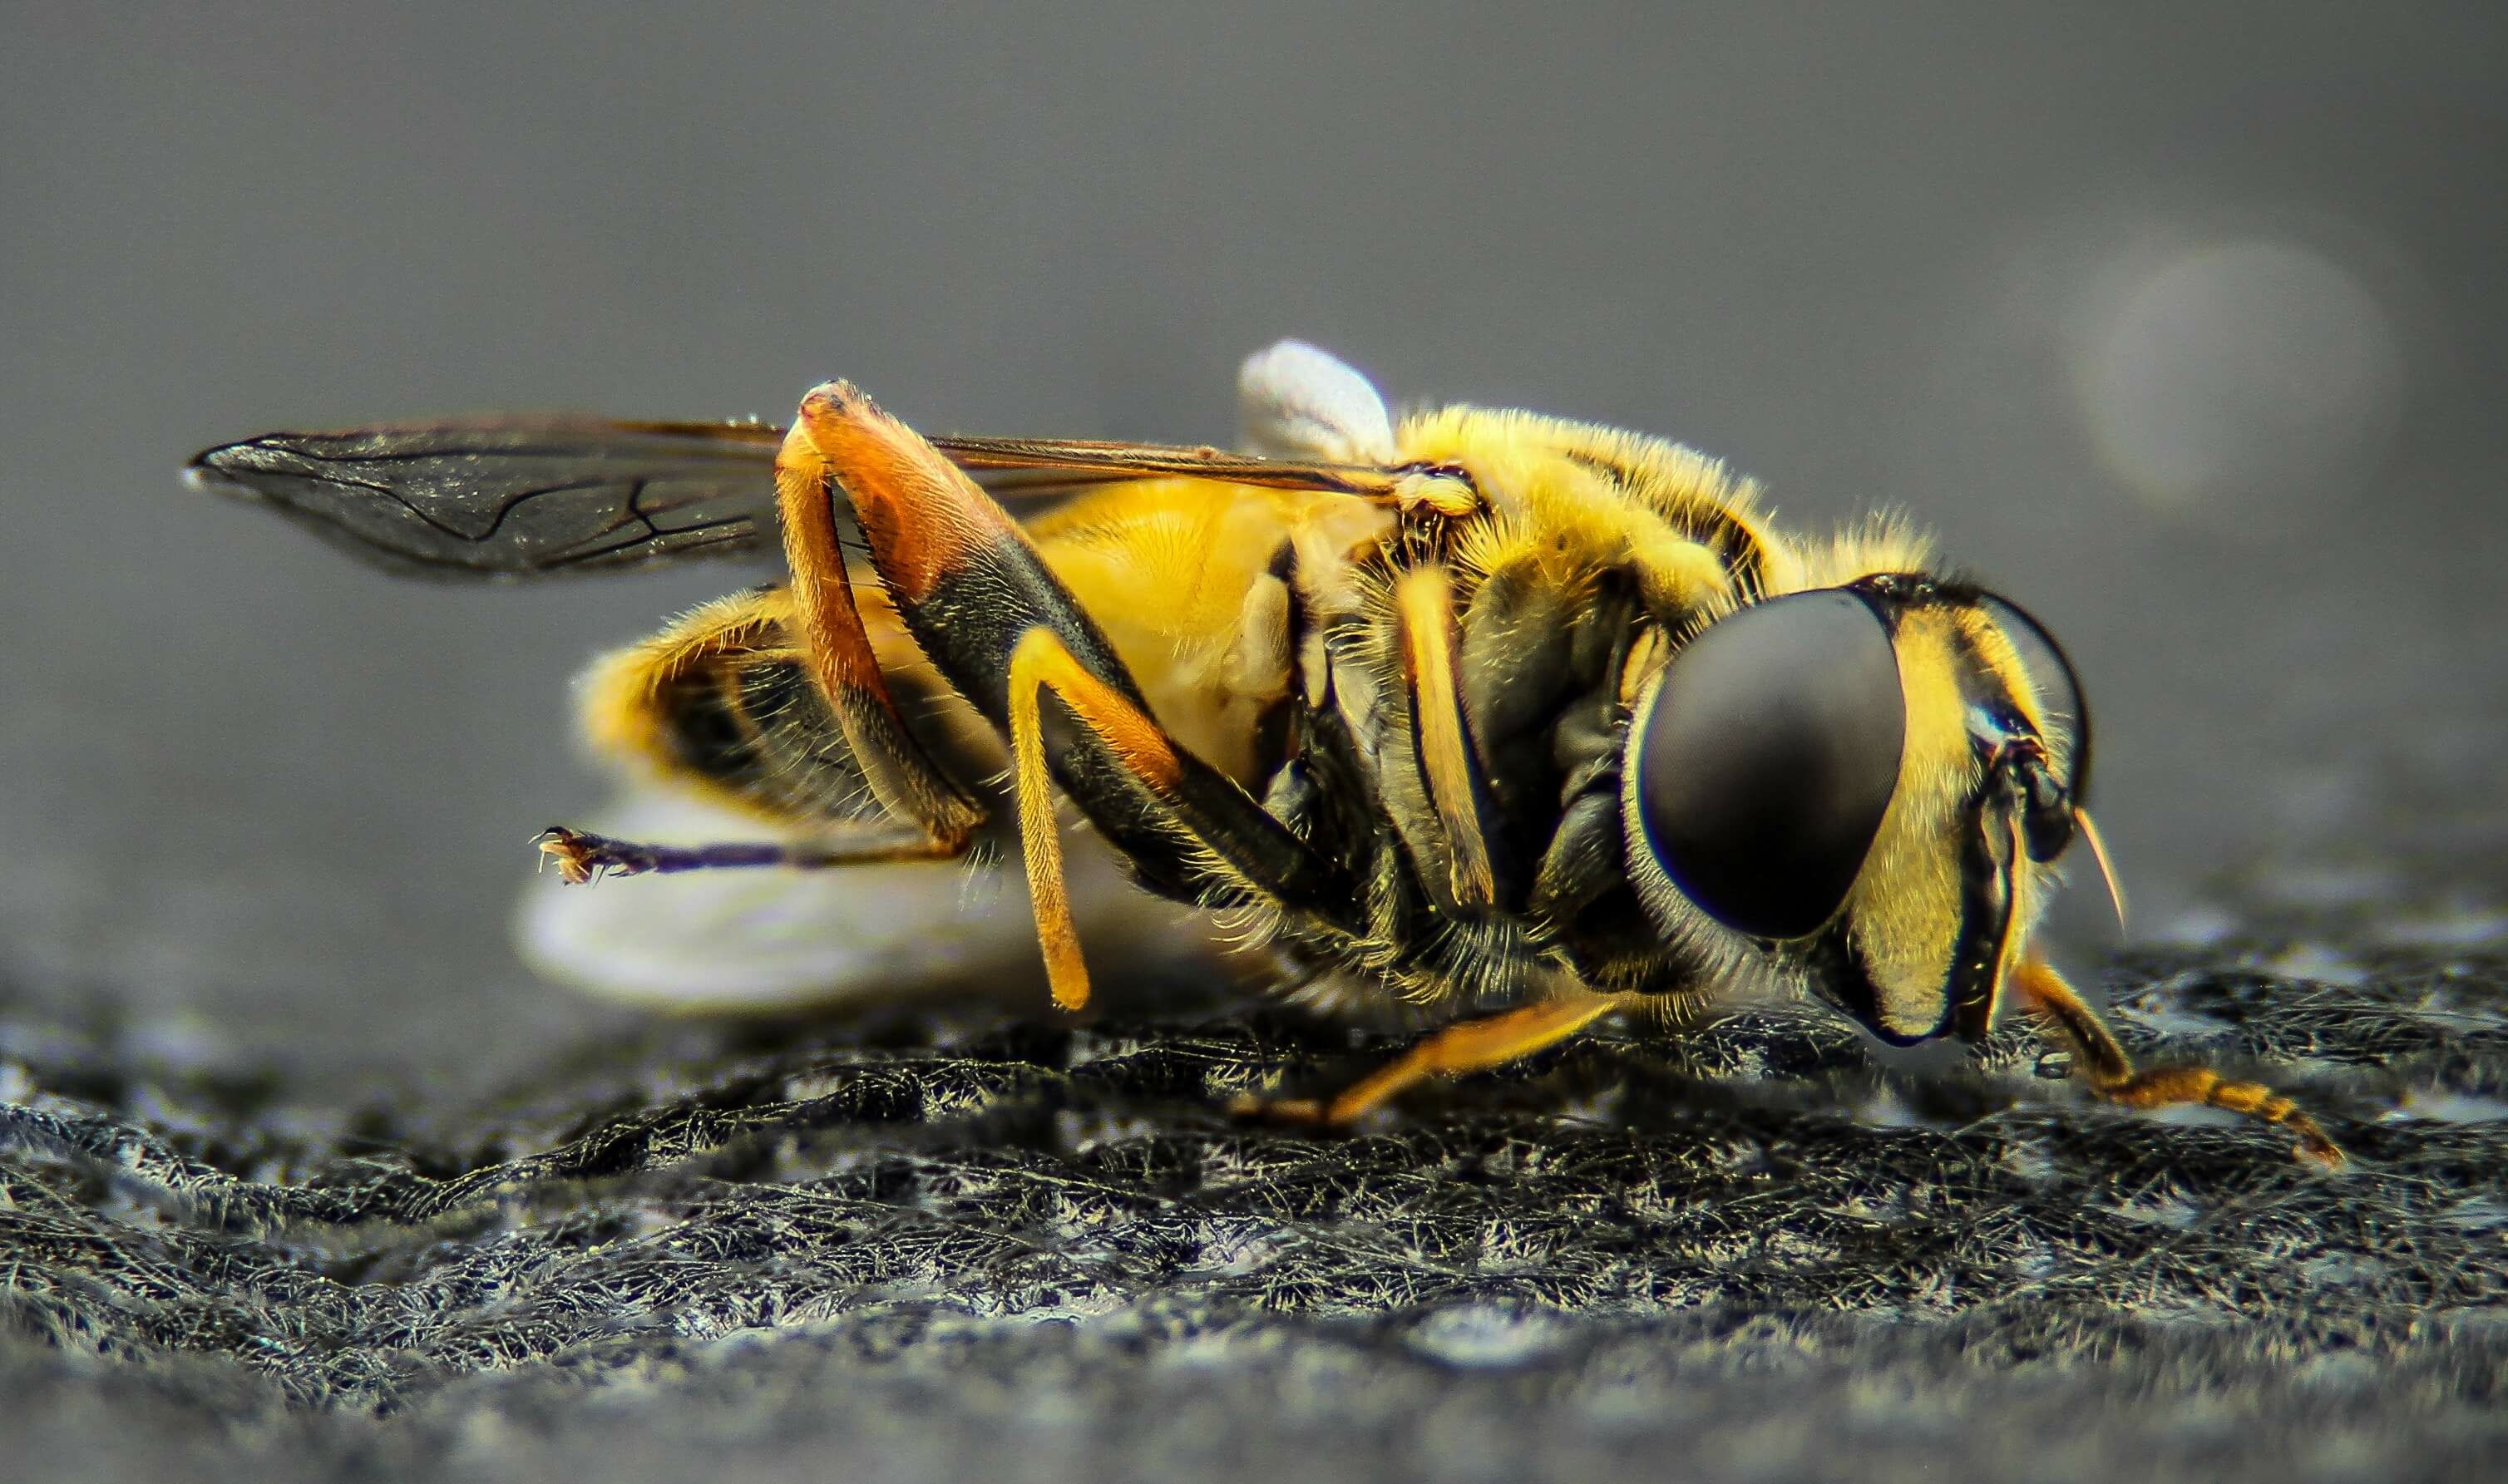 mindent a nozéma - nosema méhbetegségről